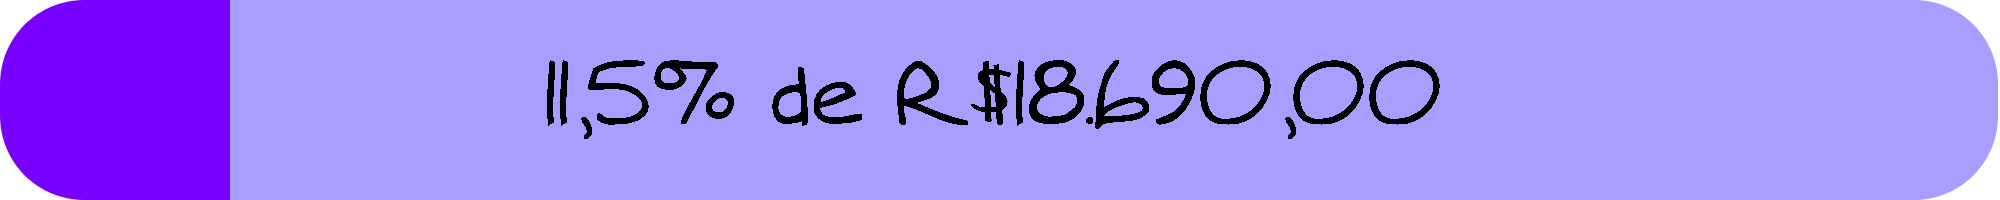 11,5% de R$18.690,00